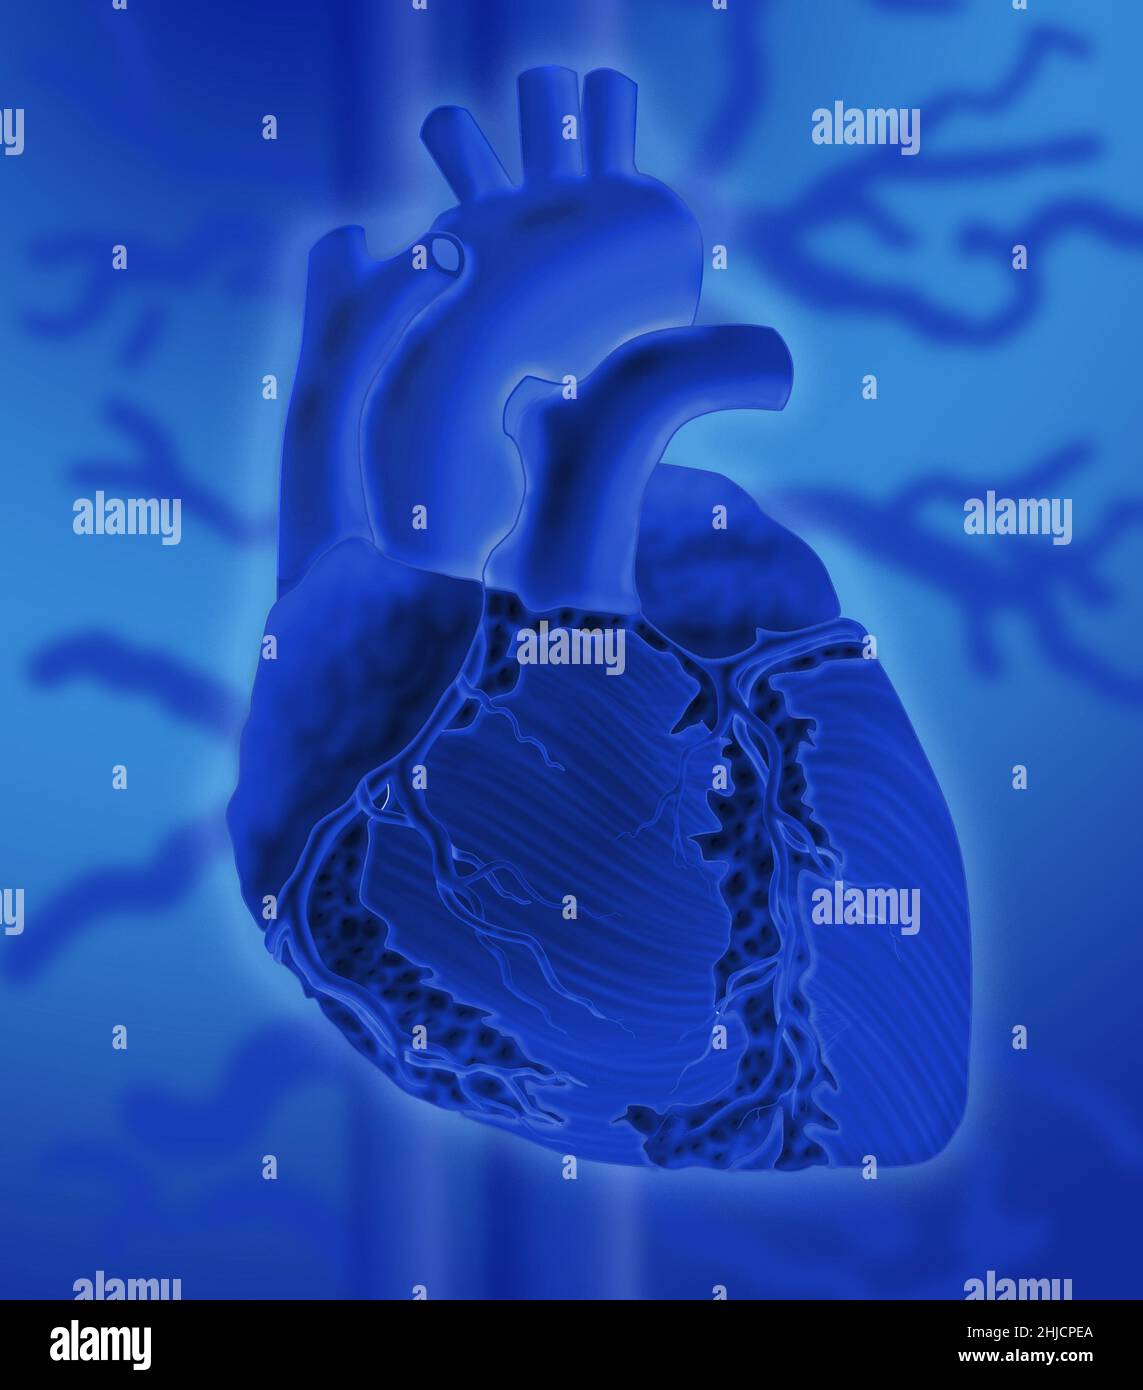 Imagen conceptual del corazón humano sobre un fondo colorido. Foto de stock